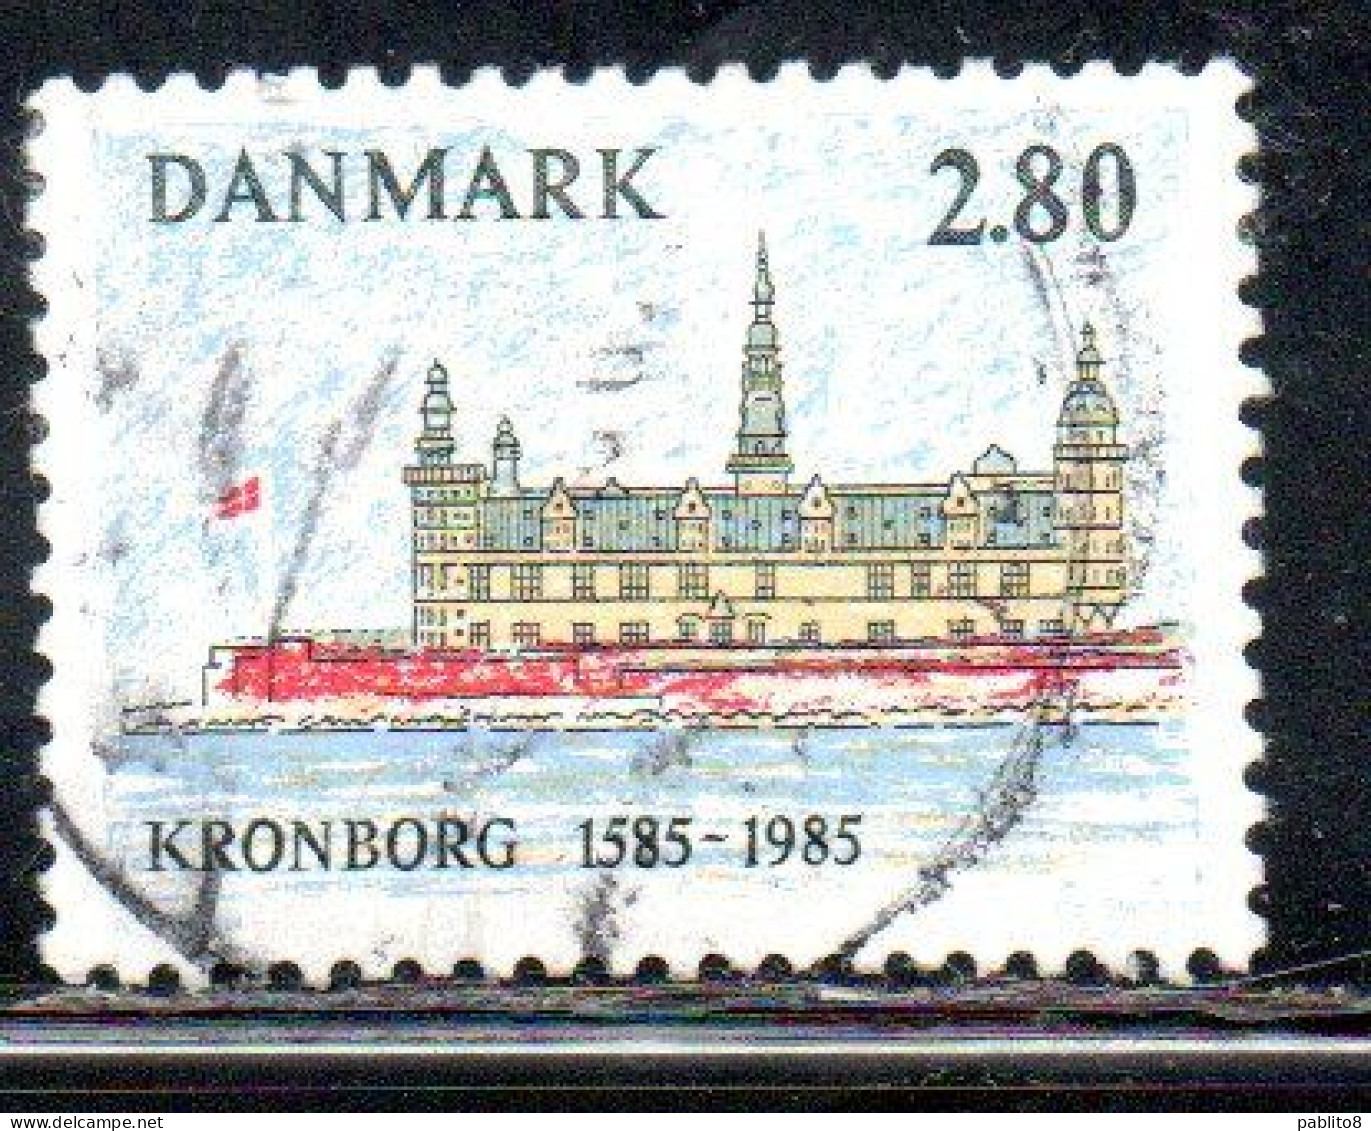 DANEMARK DANMARK DENMARK DANIMARCA 1985 KRONBORG CASTLE ELSINORE 400th ANNIVERSARY 2.80k USED USATO OBLITERE' - Oblitérés